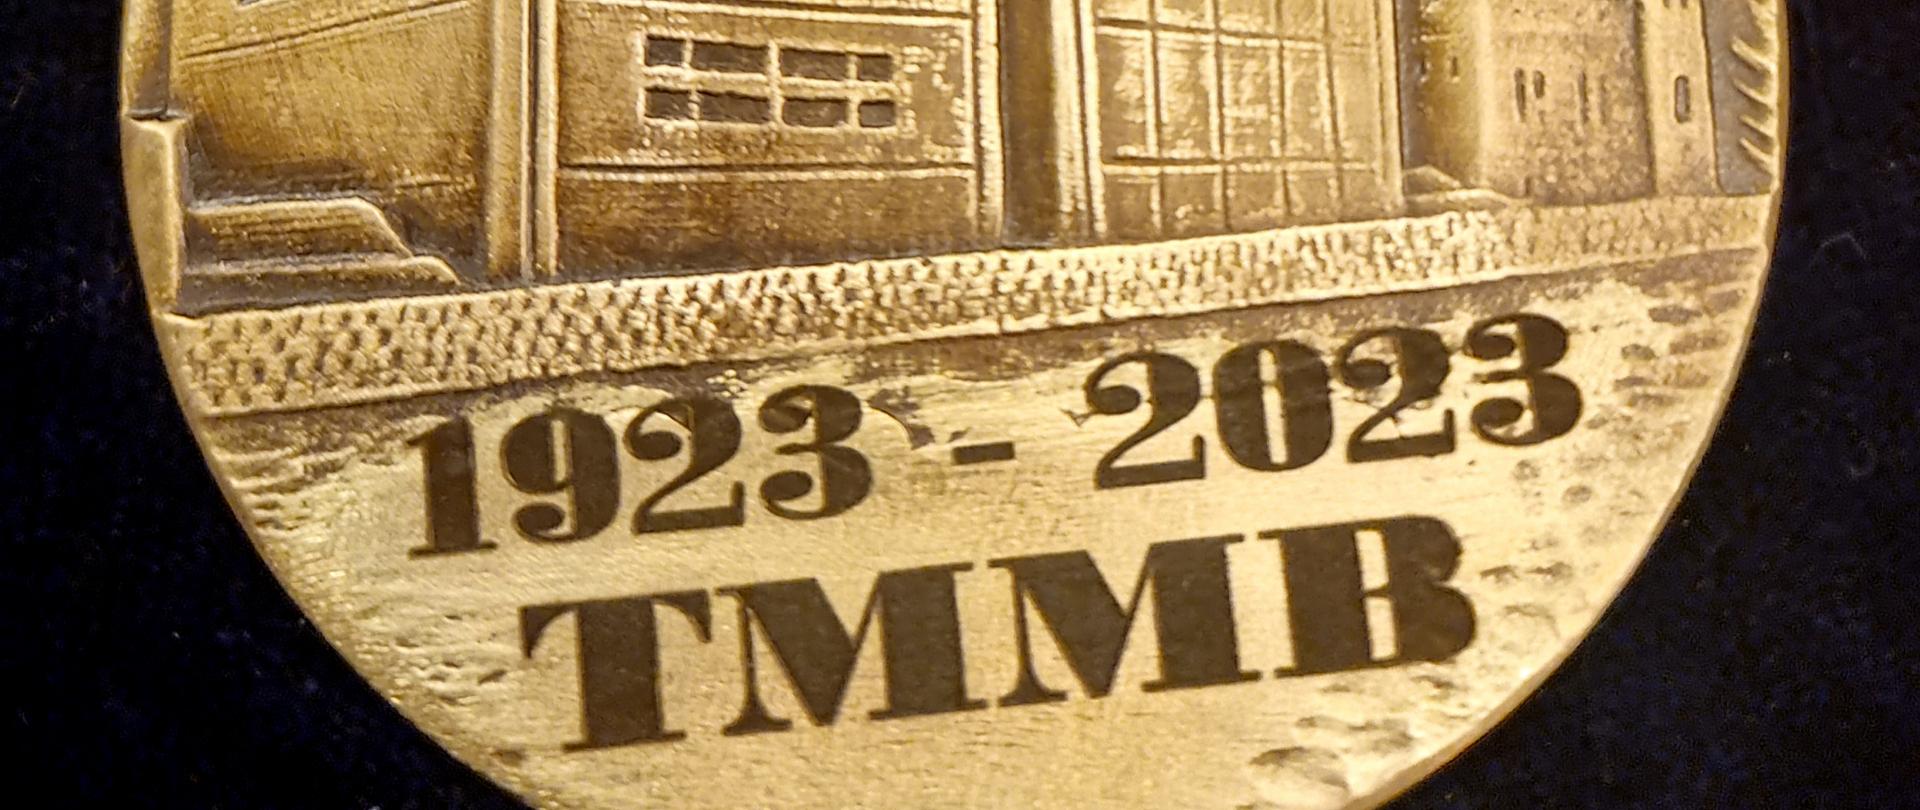 na zdjęciu medal przedstawiający spichrze bydgoskie poniżej data 1923-2023 i skrót TMMB to znaczy Towarzystwo Miłośników Miasta Bydgoszczy